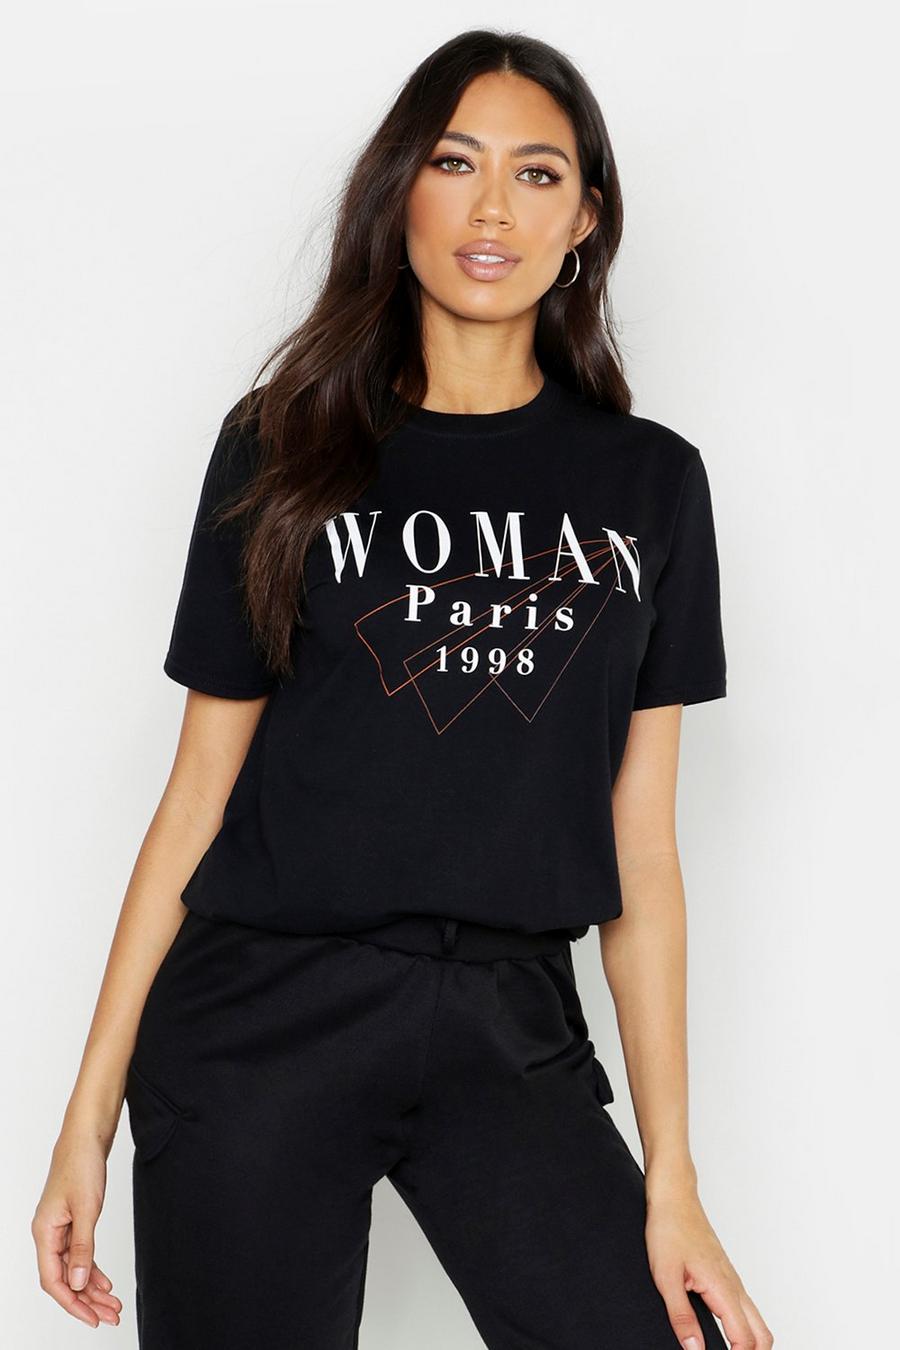 Camiseta con eslogan “Paris” Woman image number 1